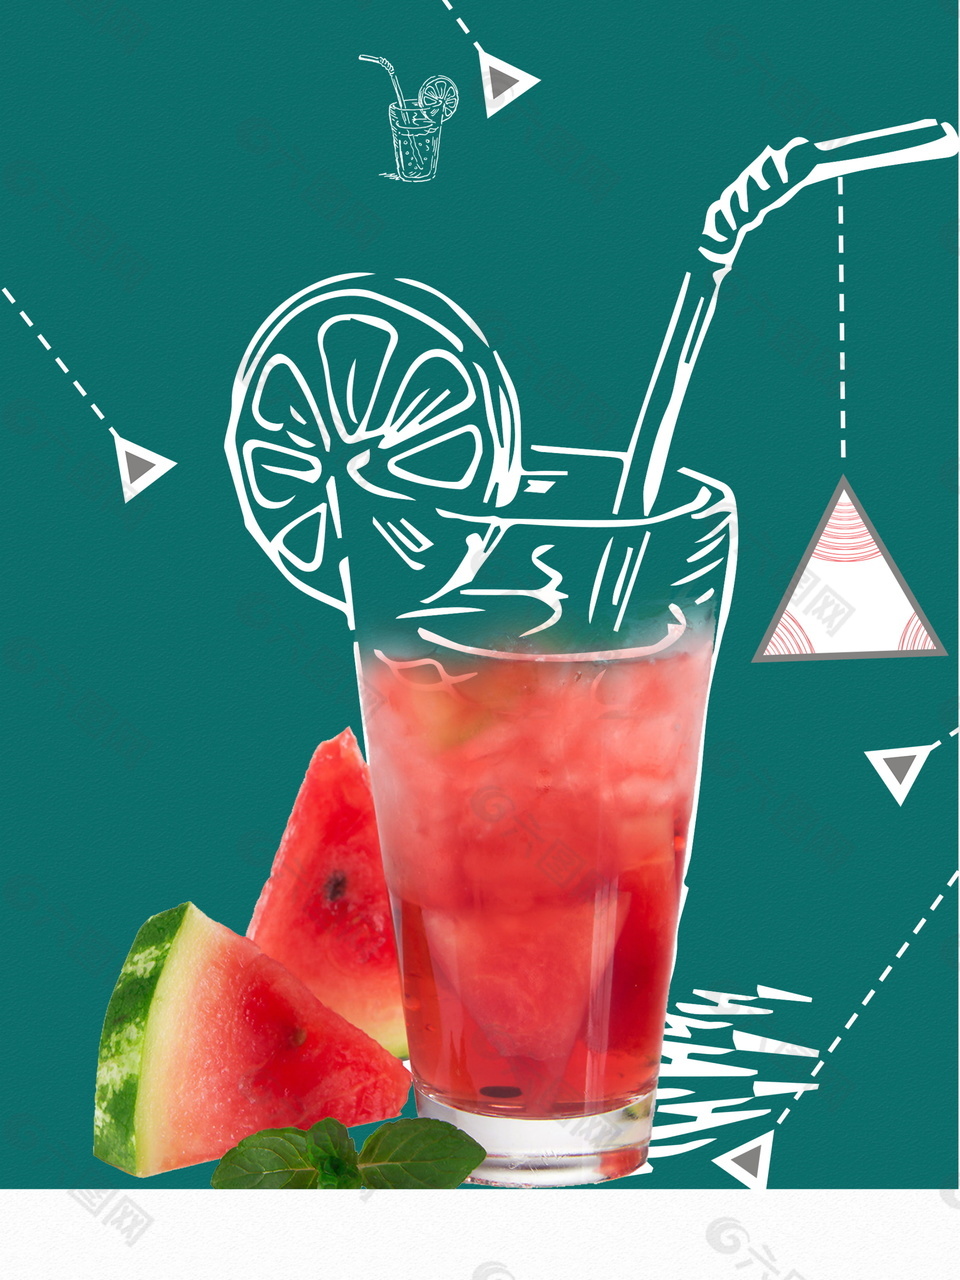 彩绘玻璃杯西瓜果汁冷饮广告背景素材